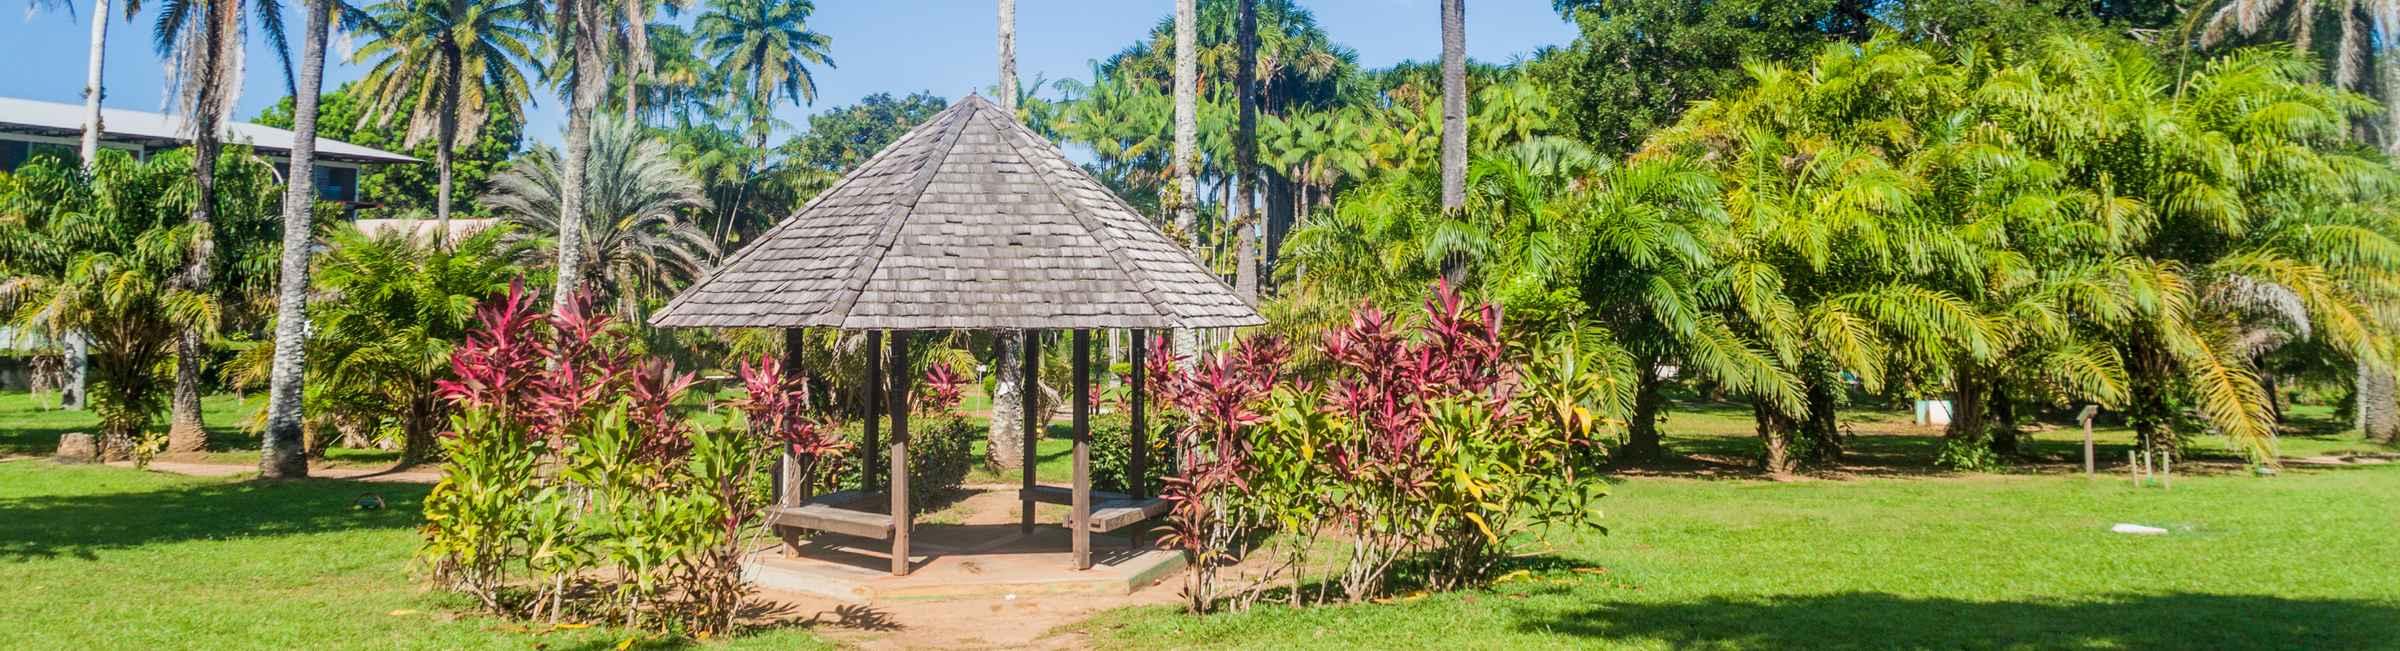 Le jardin botanique de Cayenne, en Guyane Française